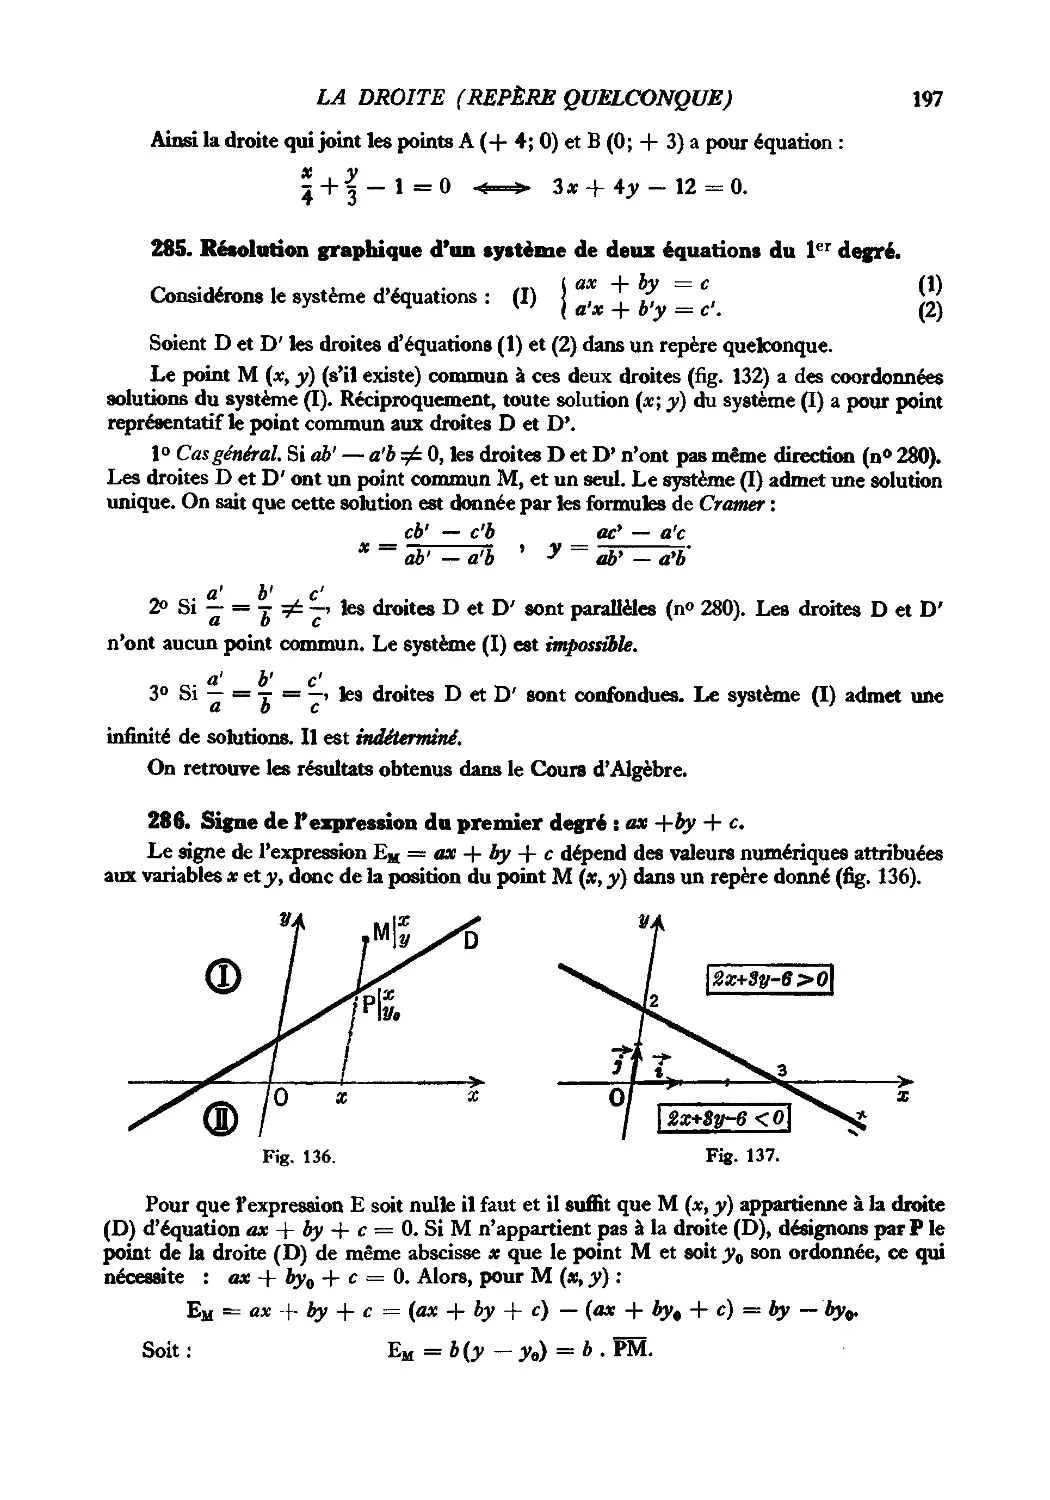 285. Résolution graphique d’un système de deux équations du 1er degré
286. Signe de l’expression du premier degré : ax + by + c